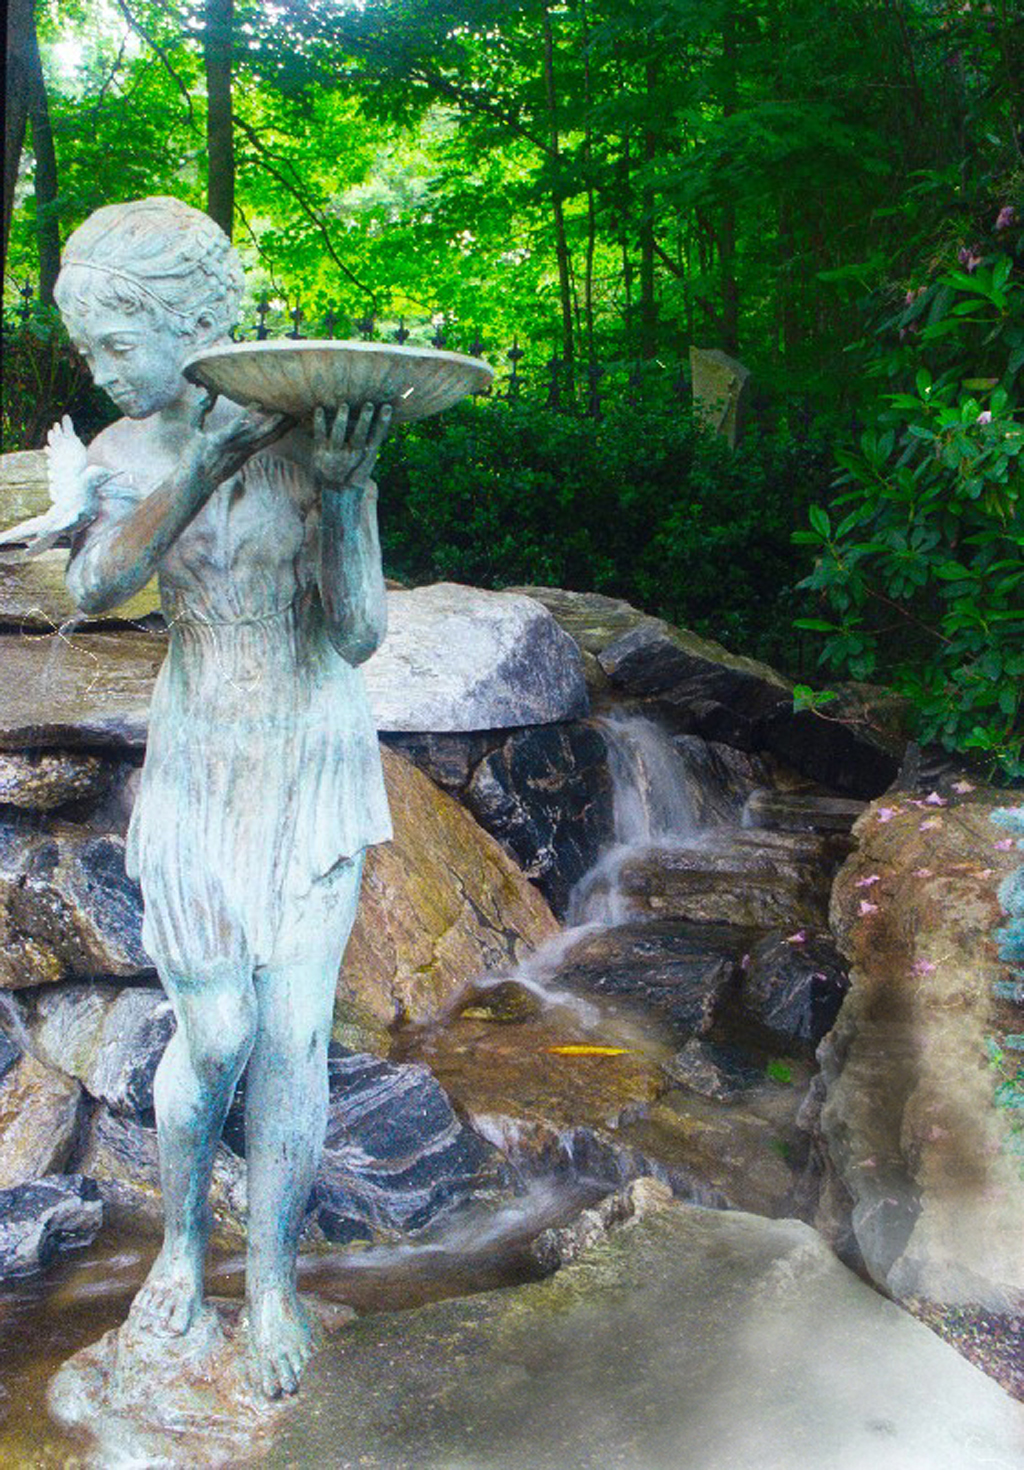 Bronze statue in water garden